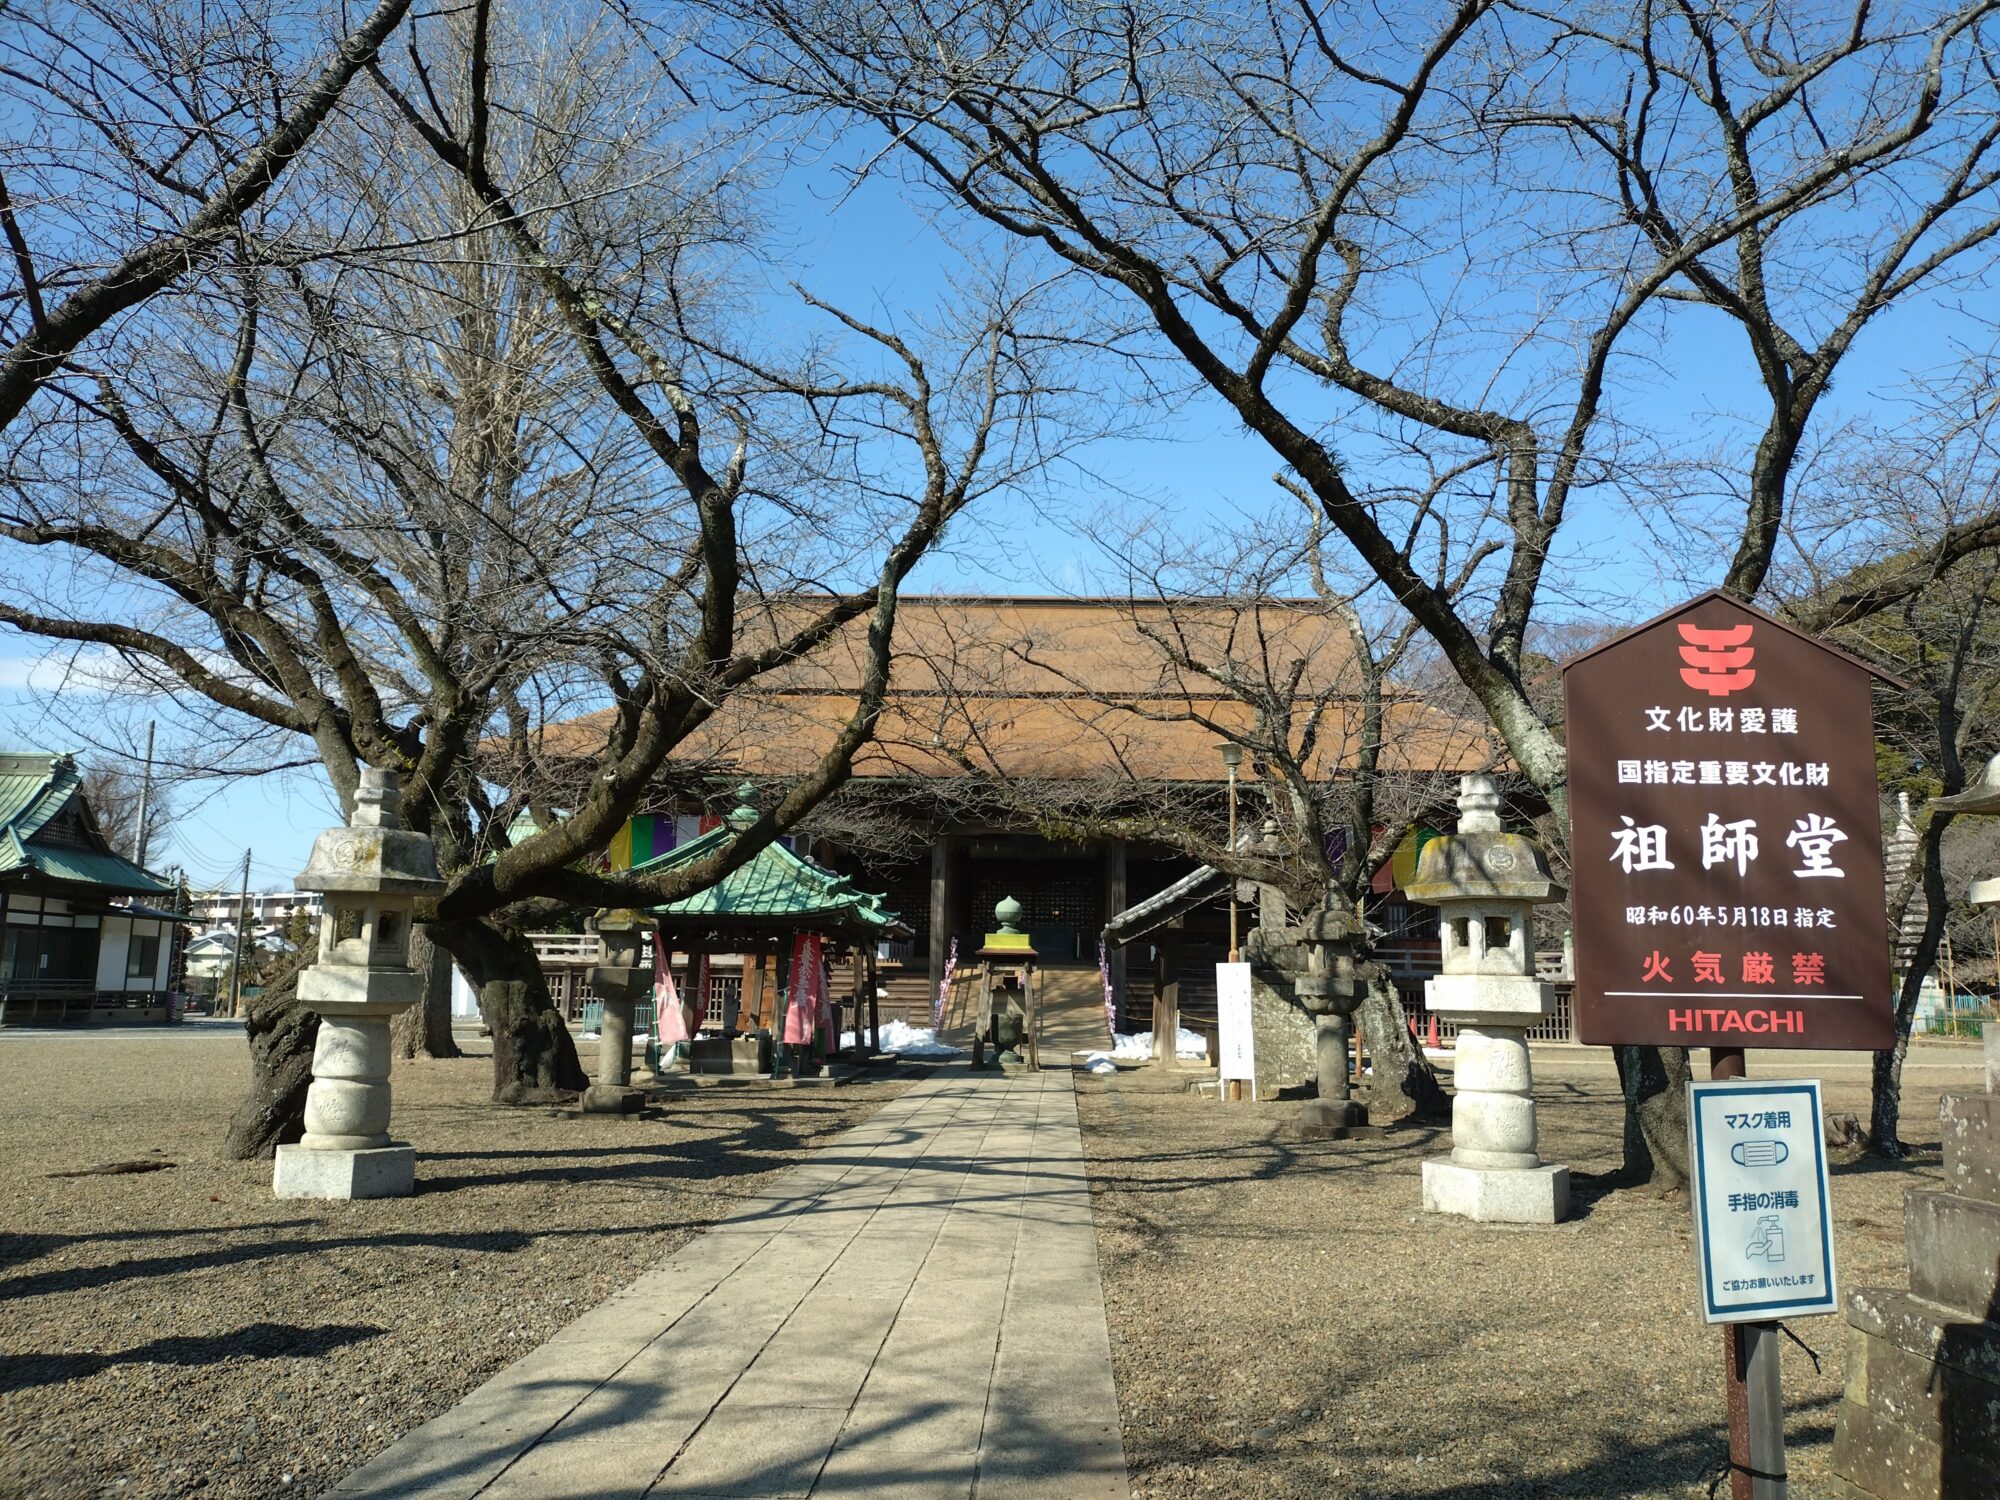 法華経寺の祖師堂